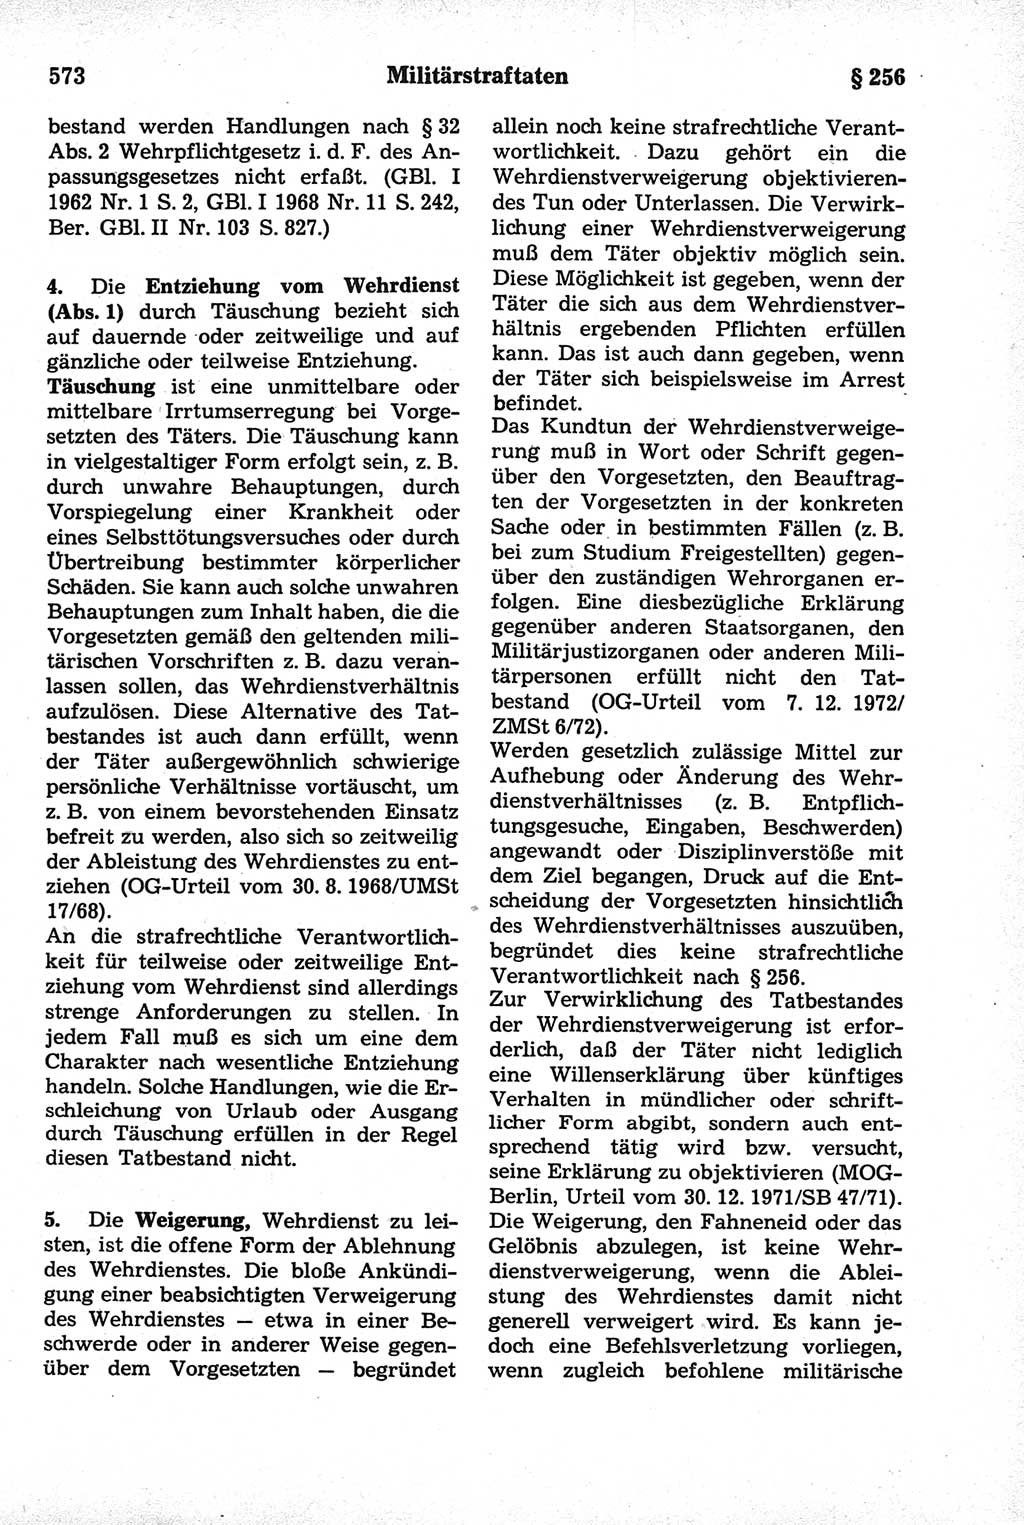 Strafrecht der Deutschen Demokratischen Republik (DDR), Kommentar zum Strafgesetzbuch (StGB) 1981, Seite 573 (Strafr. DDR Komm. StGB 1981, S. 573)